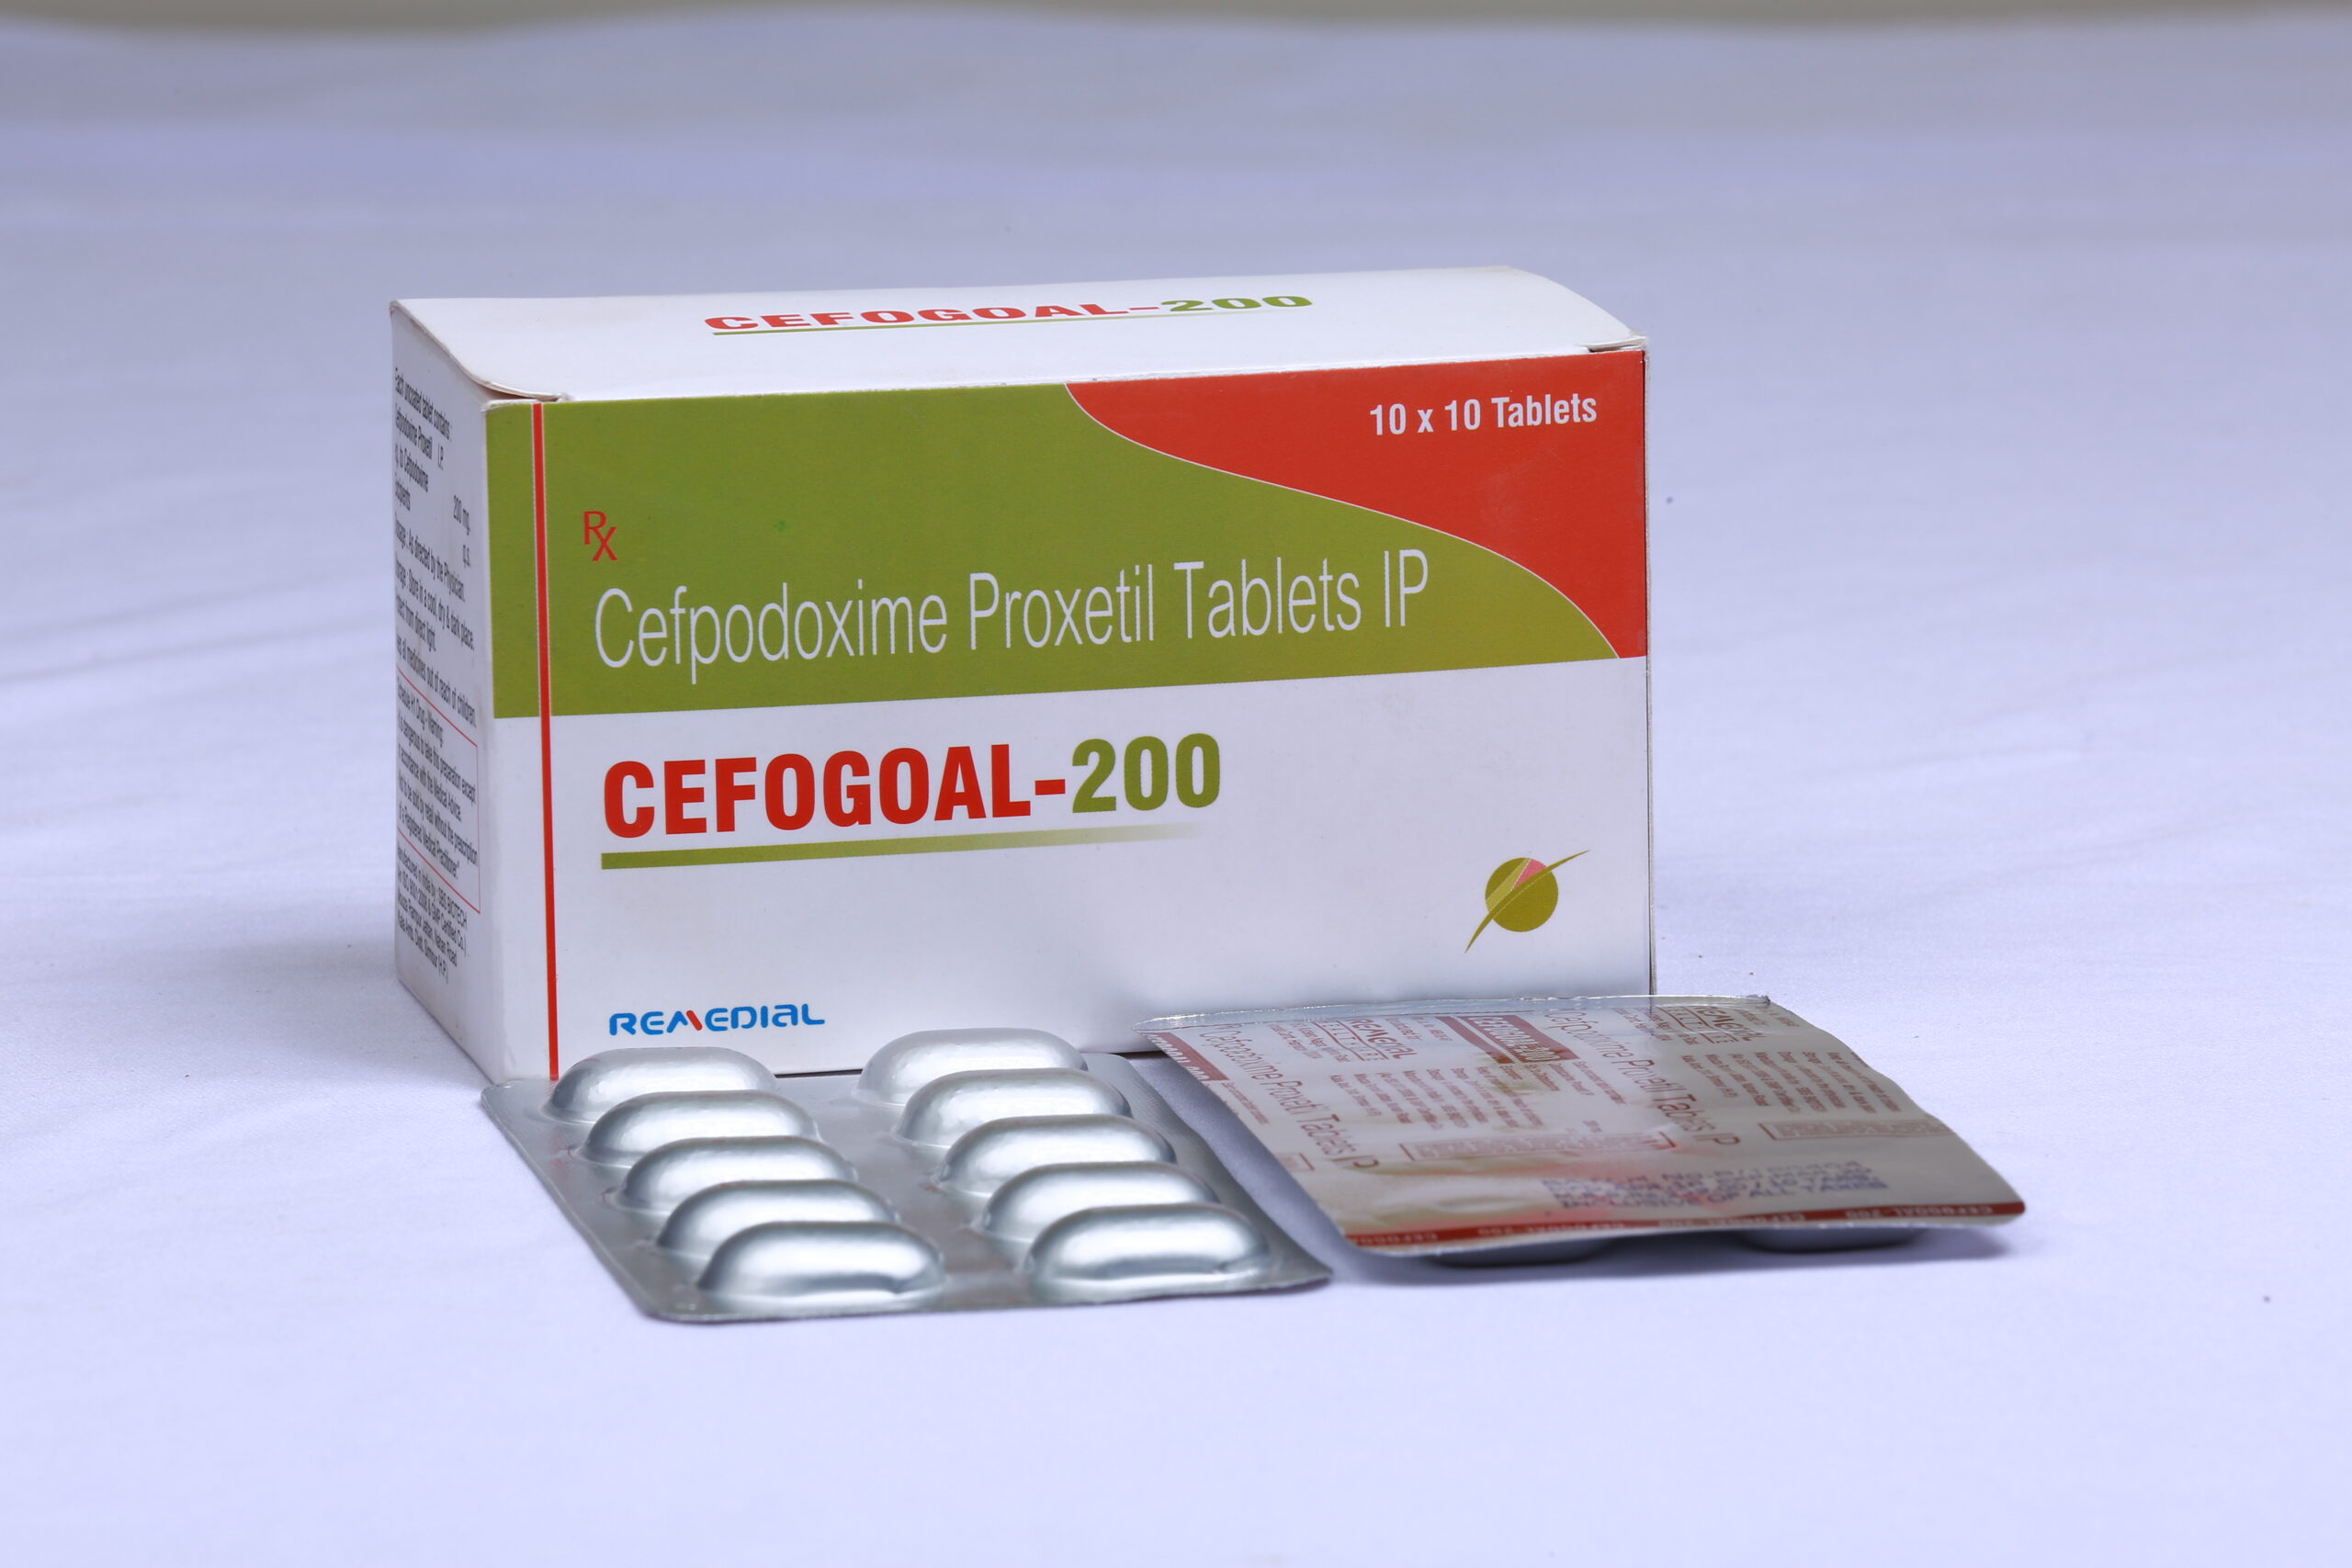 CEFOGOAL-200 (Cefpodoxime Proxetill 200mg)